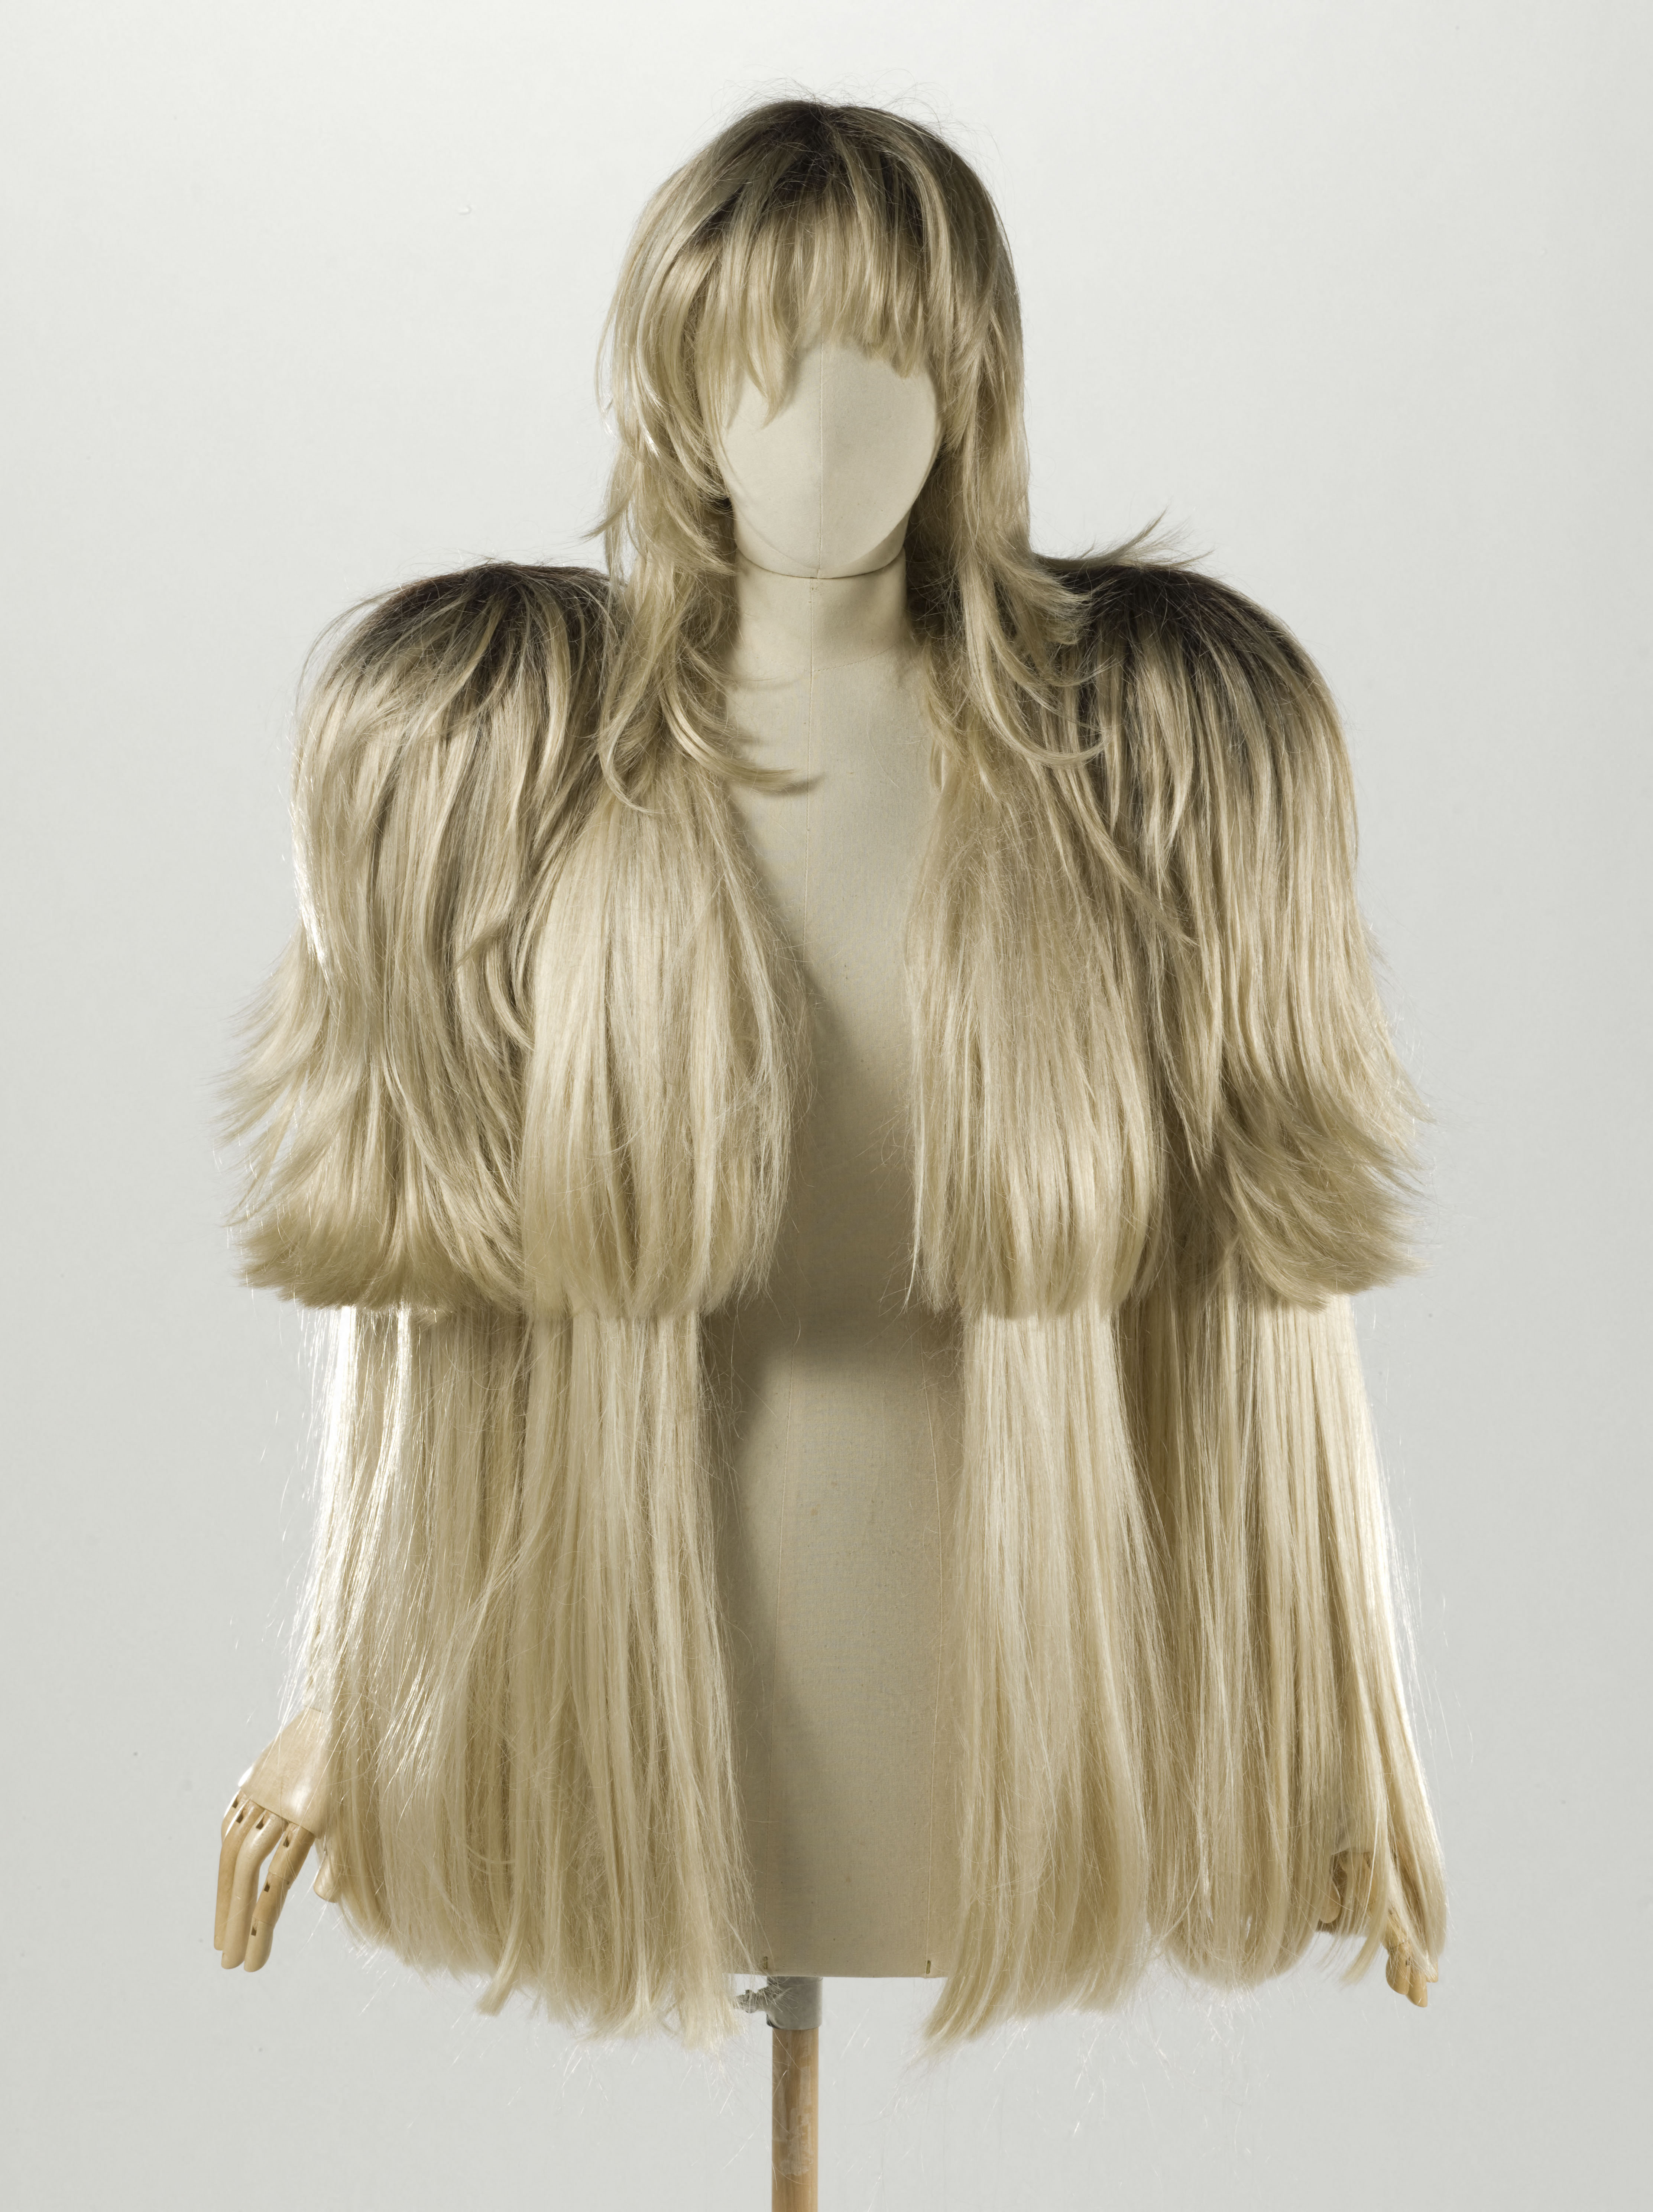 Martin Margiela (né en 1957). Ensemble (habillement). Ensemble veste et perruque. Cheveux synthétiques blonds, taffetas ivoire, 2009. Galliera, musée de la Mode de la Ville de Paris.